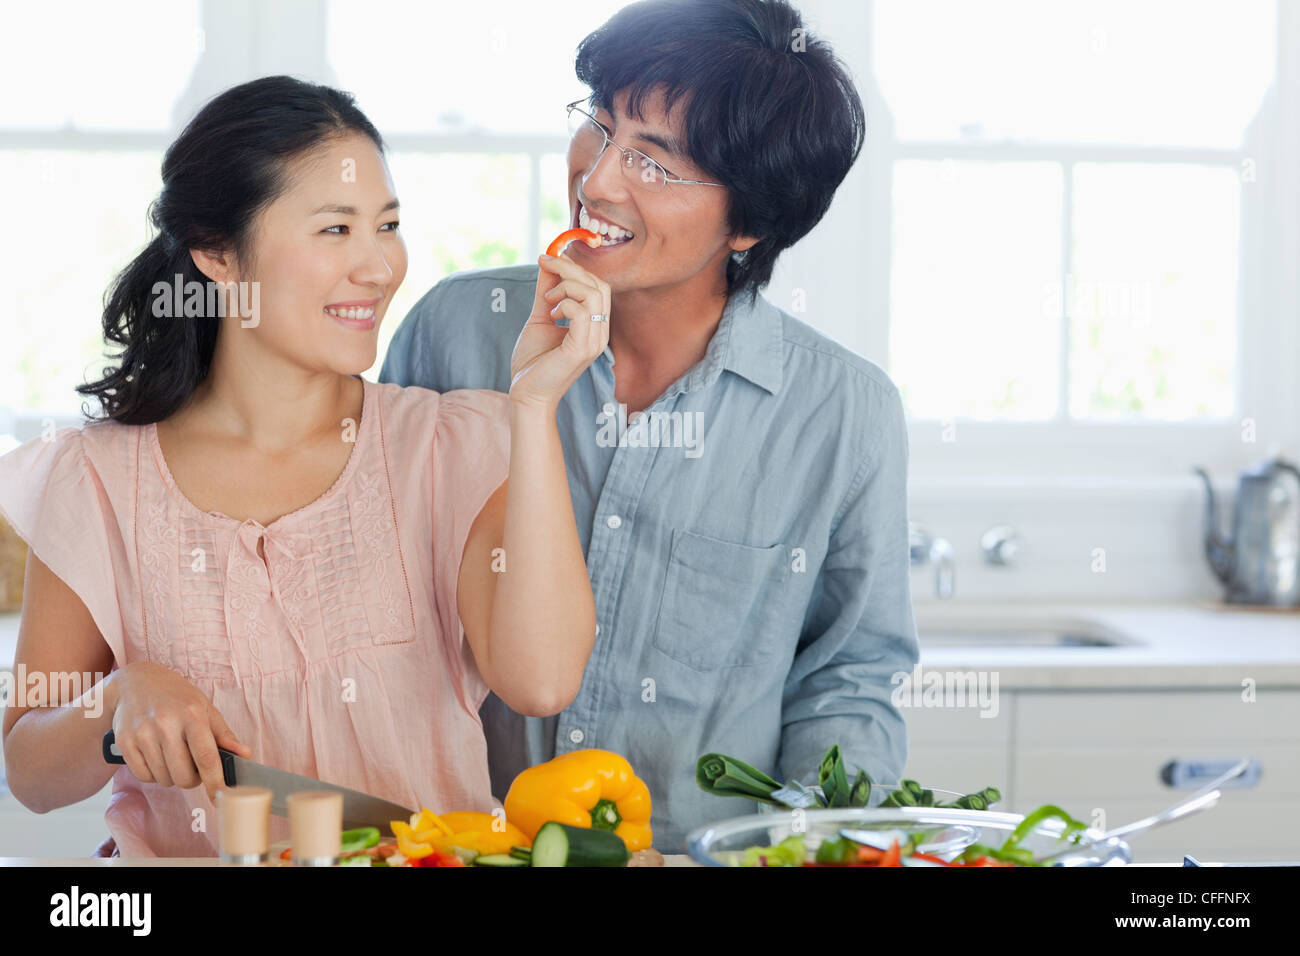 Ein Mann nimmt gerne seine Frau Angebot ein Stück Paprika Stockfoto